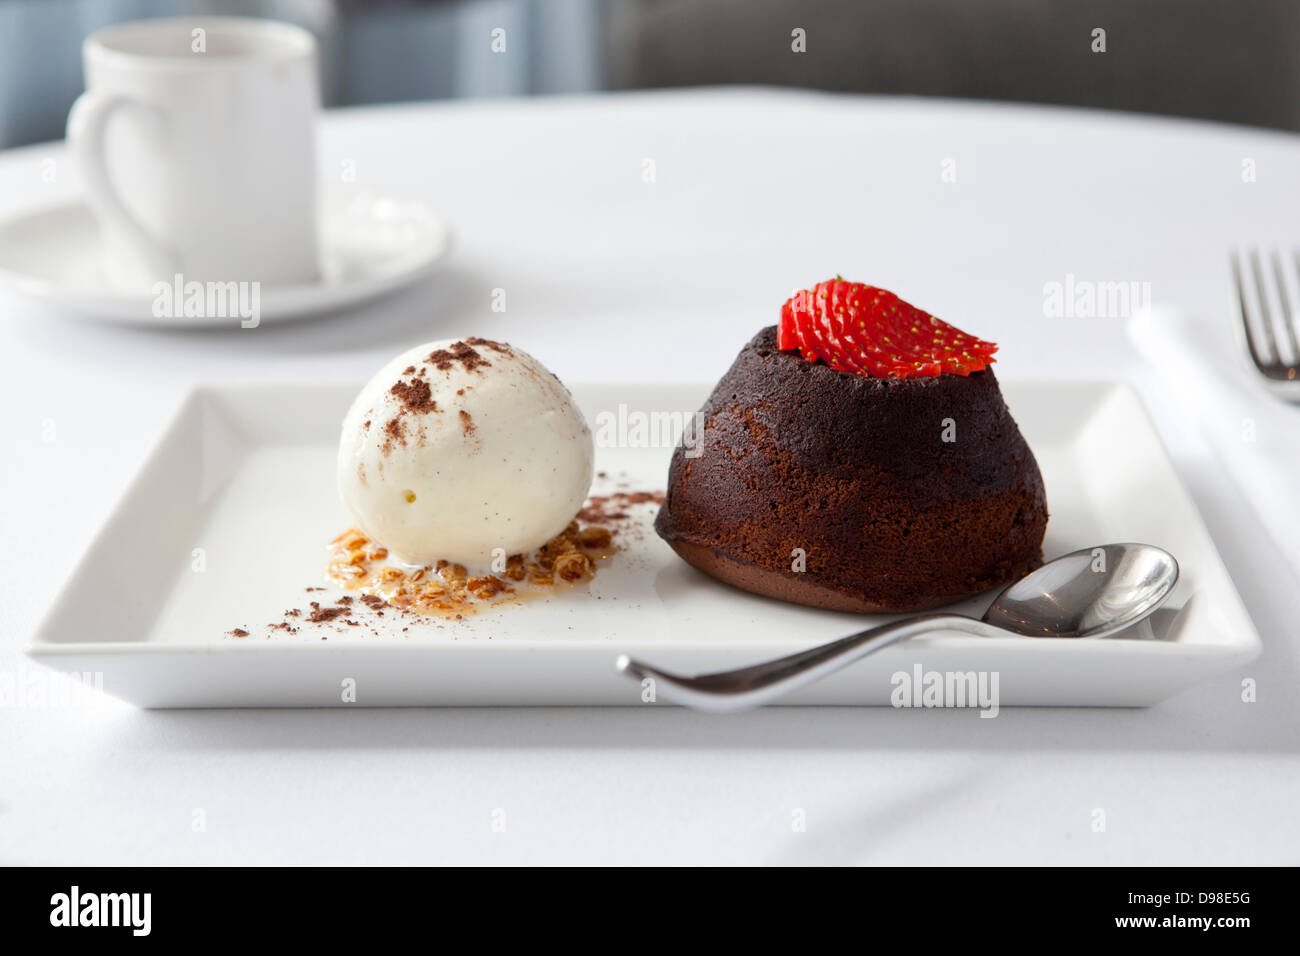 Fondant au chocolat surmontée d'une fraise, glace vanille Banque D'Images